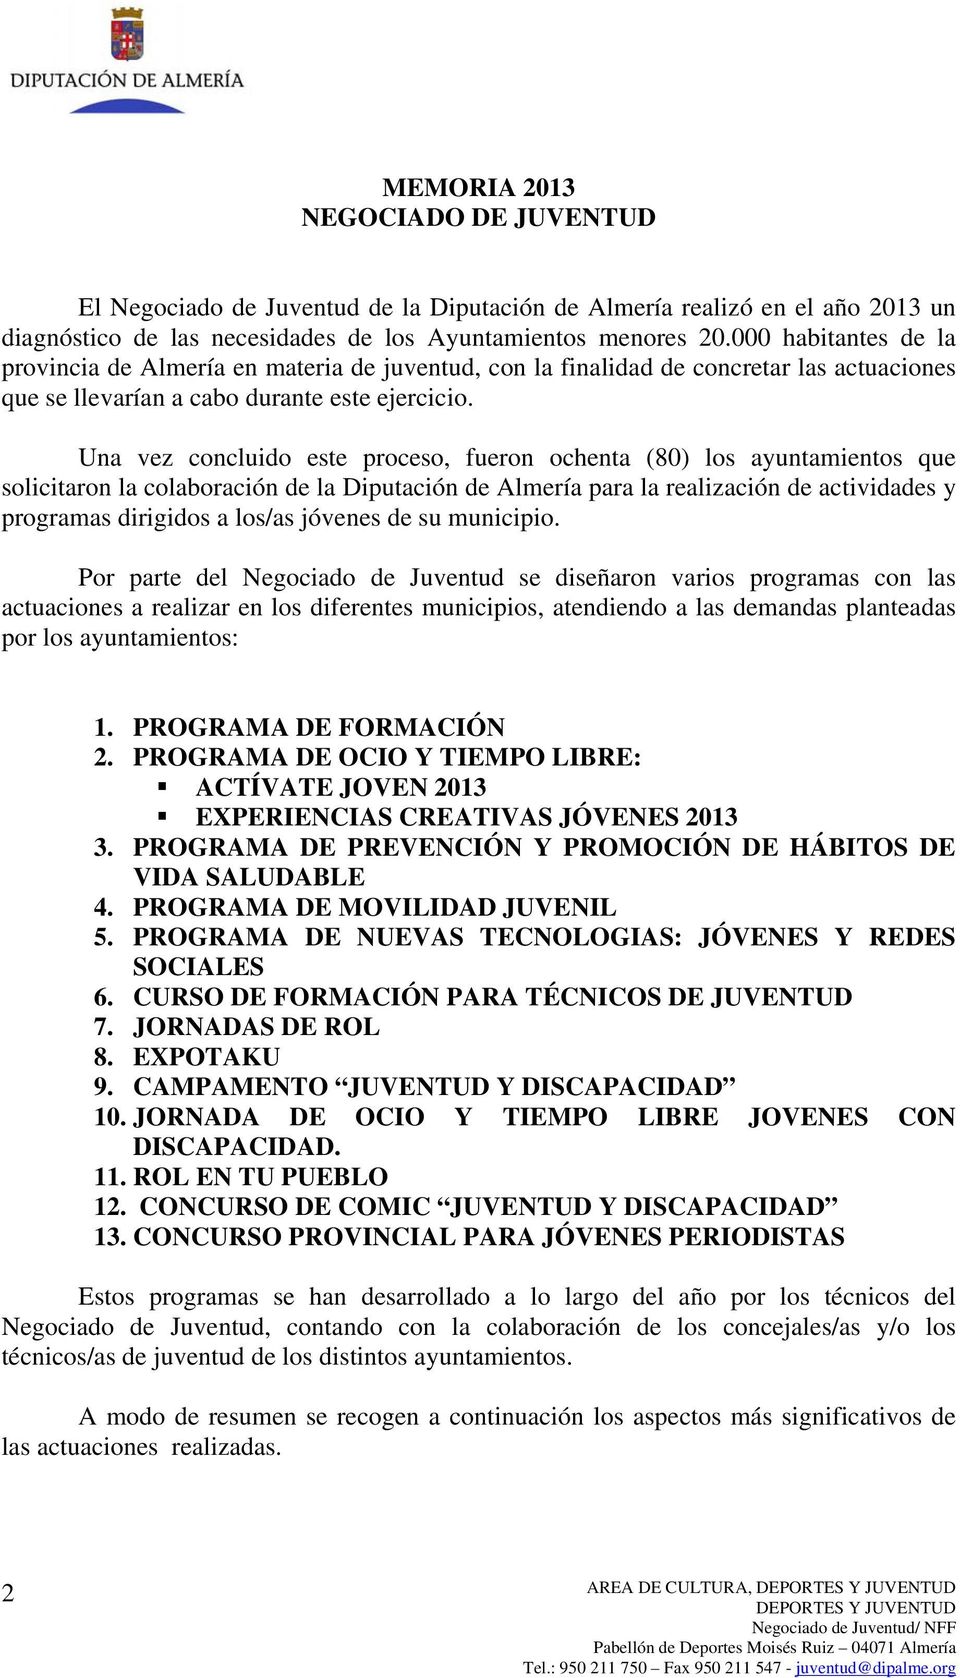 Una vez concluido este proceso, fueron ochenta (80) los ayuntamientos que solicitaron la colaboración de la Diputación de Almería para la realización de actividades y programas dirigidos a los/as